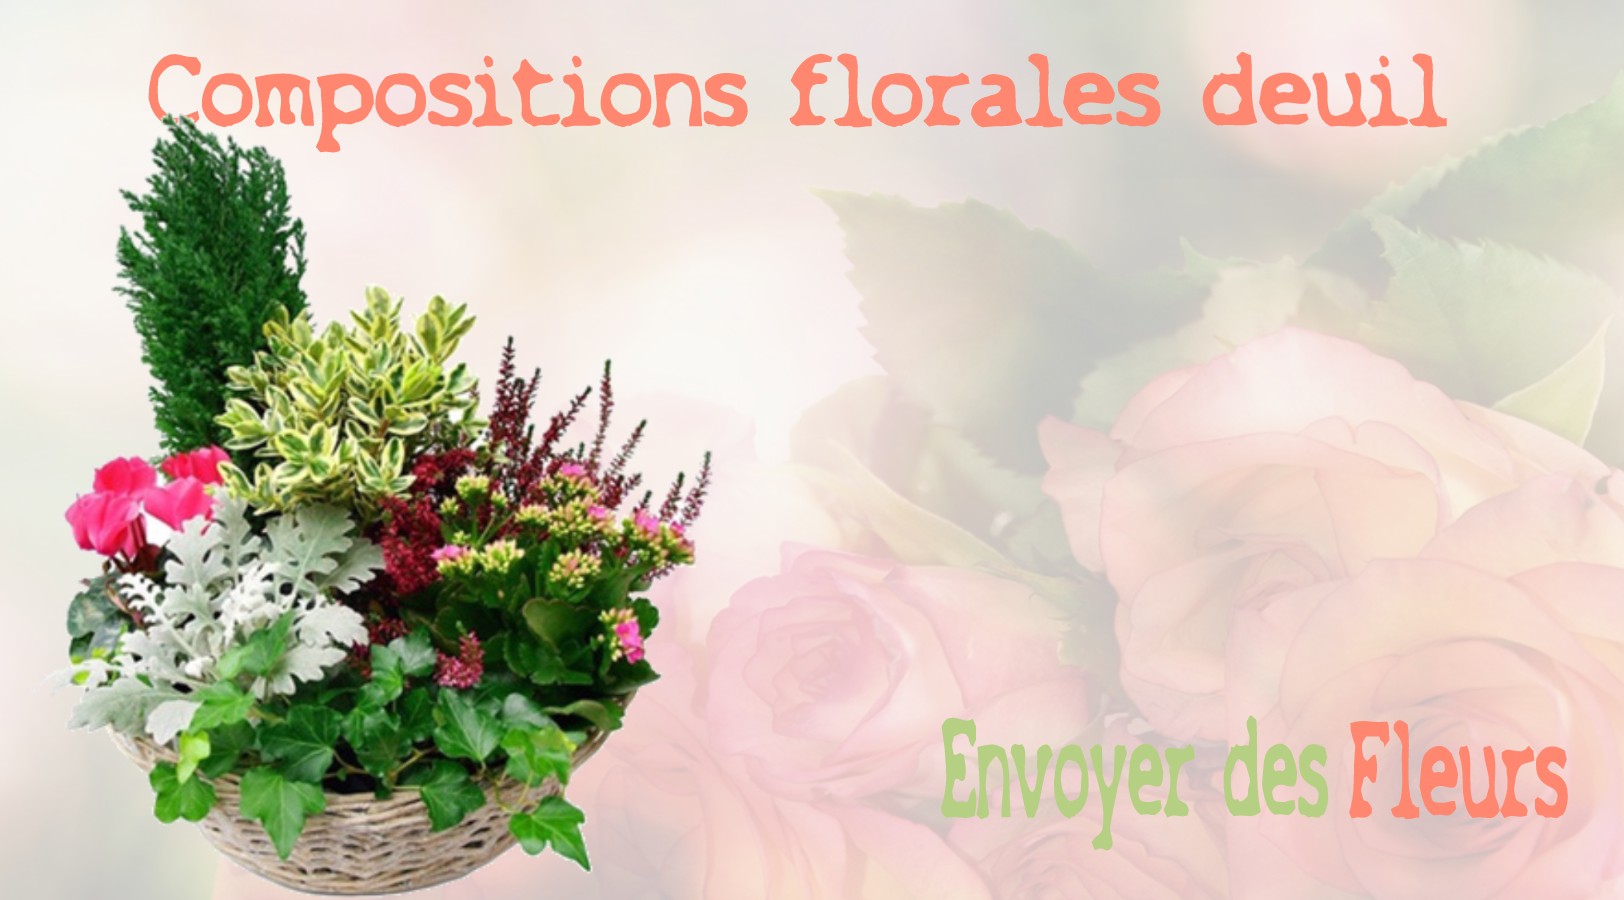 Compositions Florales deuil - LIVRAISON FLEURS DEUIL A PARIS 3